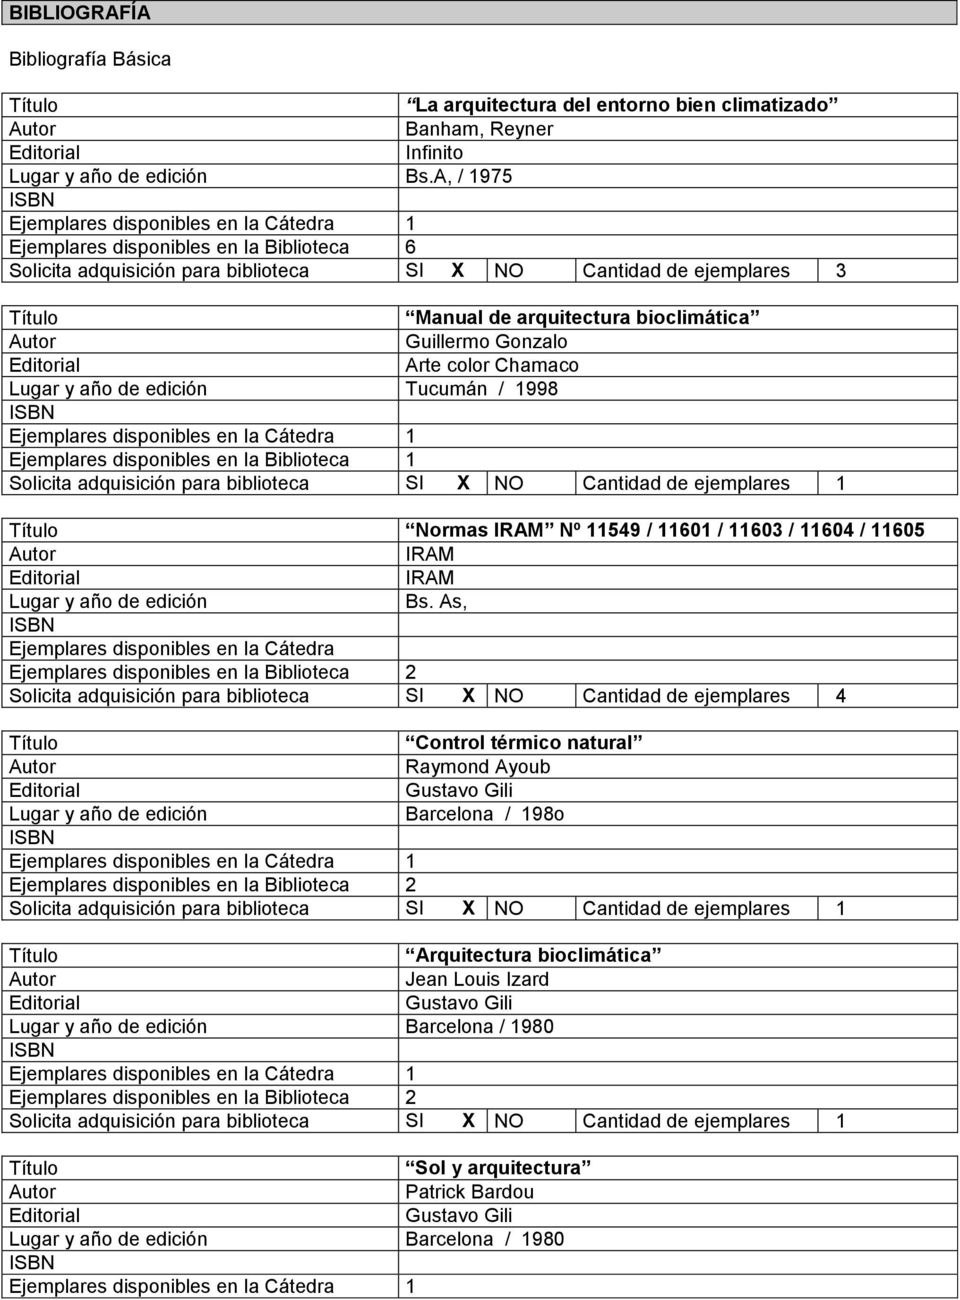 Lugar y año de edición Tucumán / 1998 Ejemplares disponibles en la Biblioteca 1 Solicita adquisición para biblioteca SI X NO Cantidad de ejemplares 1 Normas IRAM Nº 11549 / 11601 / 11603 / 11604 /